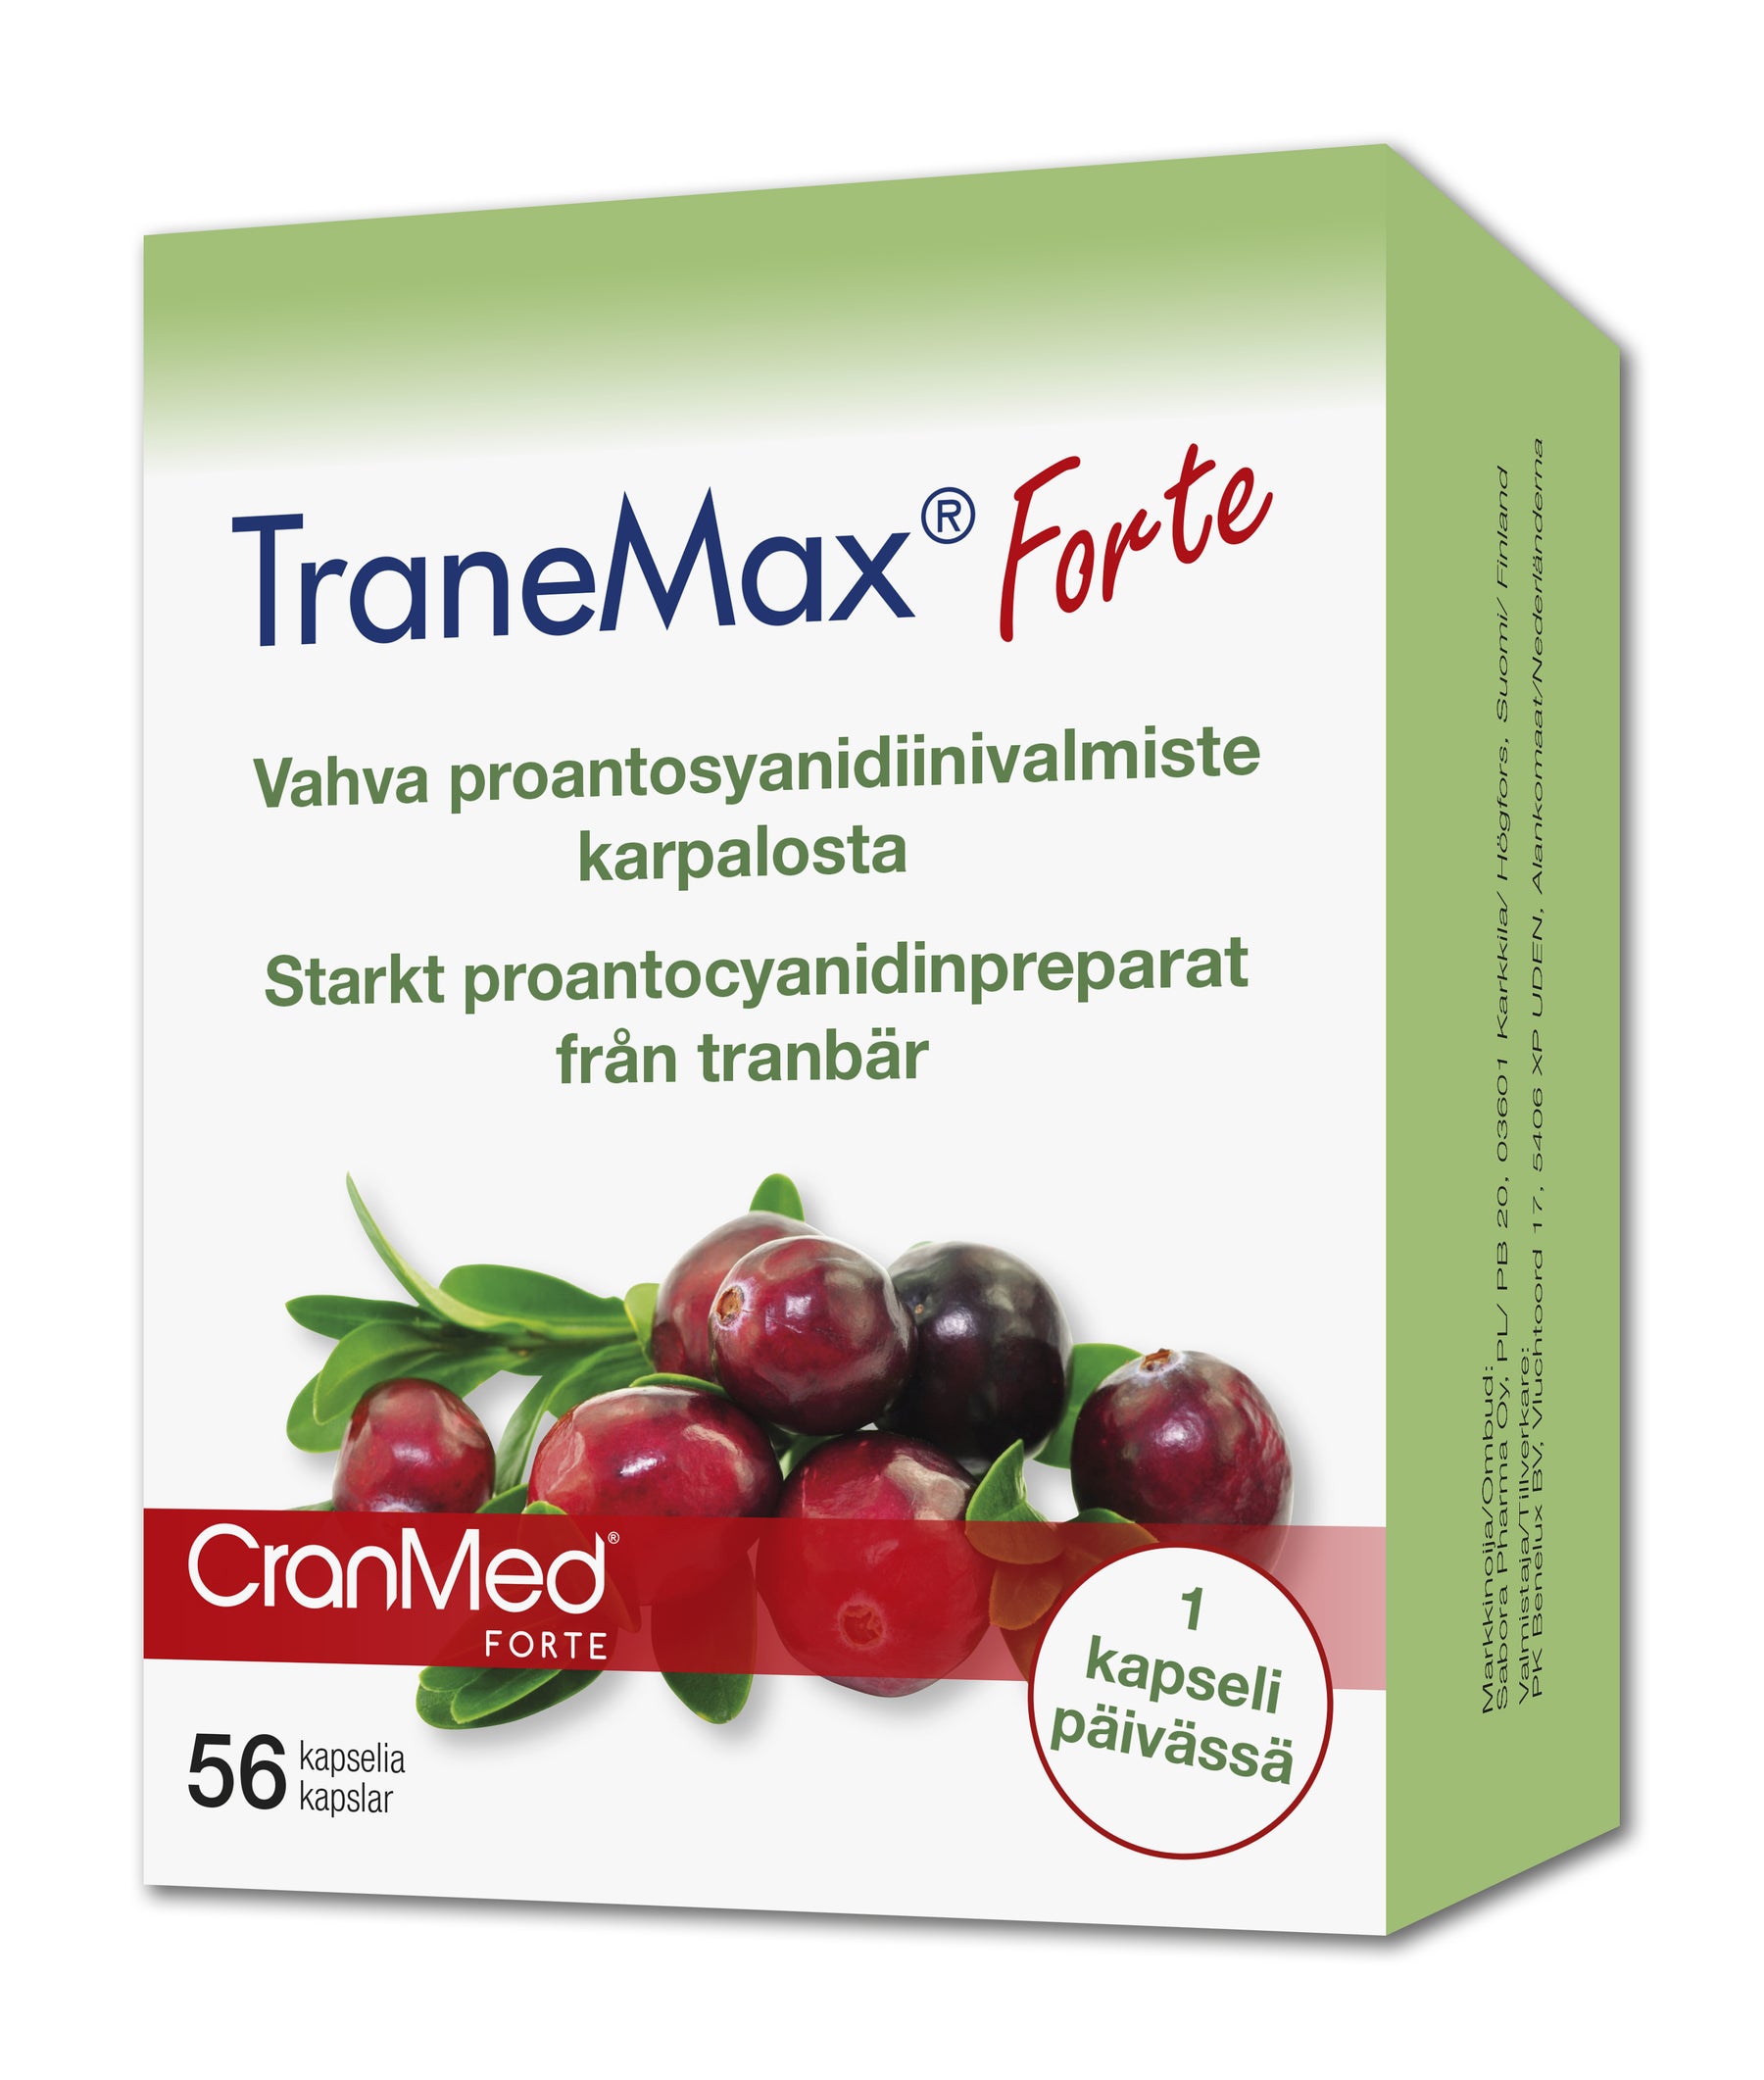 TraneMax Forte 56 kaps. - Vahva proantosyanidiinivalmiste karpalosta